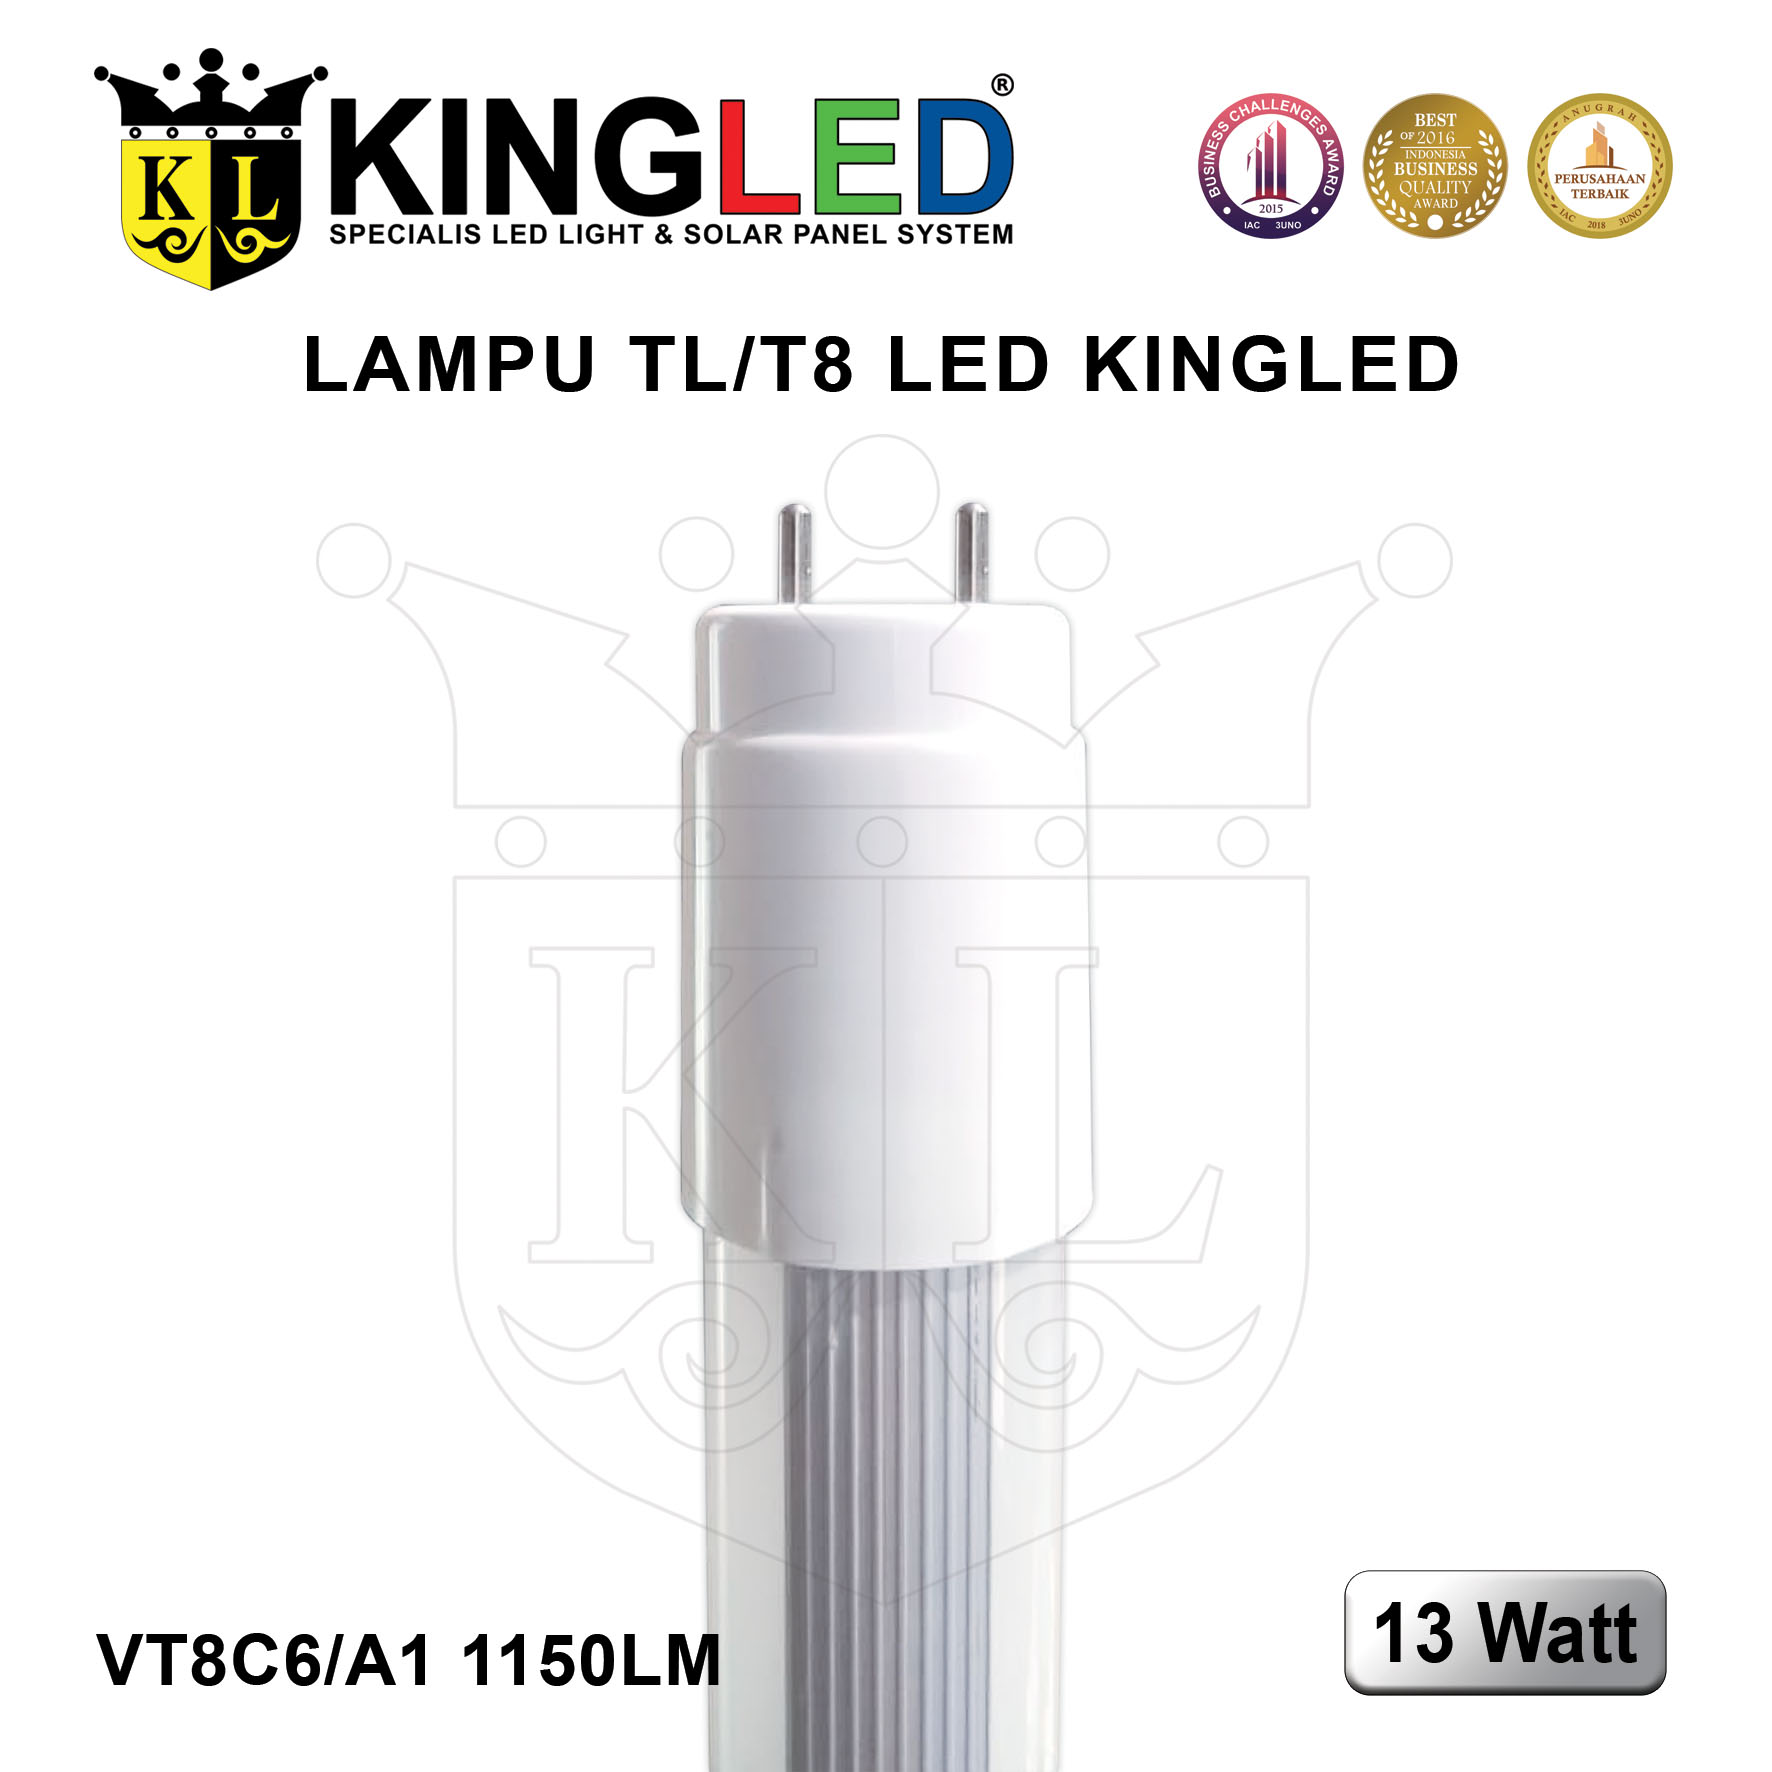 Lampu TL T8 LED 13 Watt / Tube T8 13 Watt